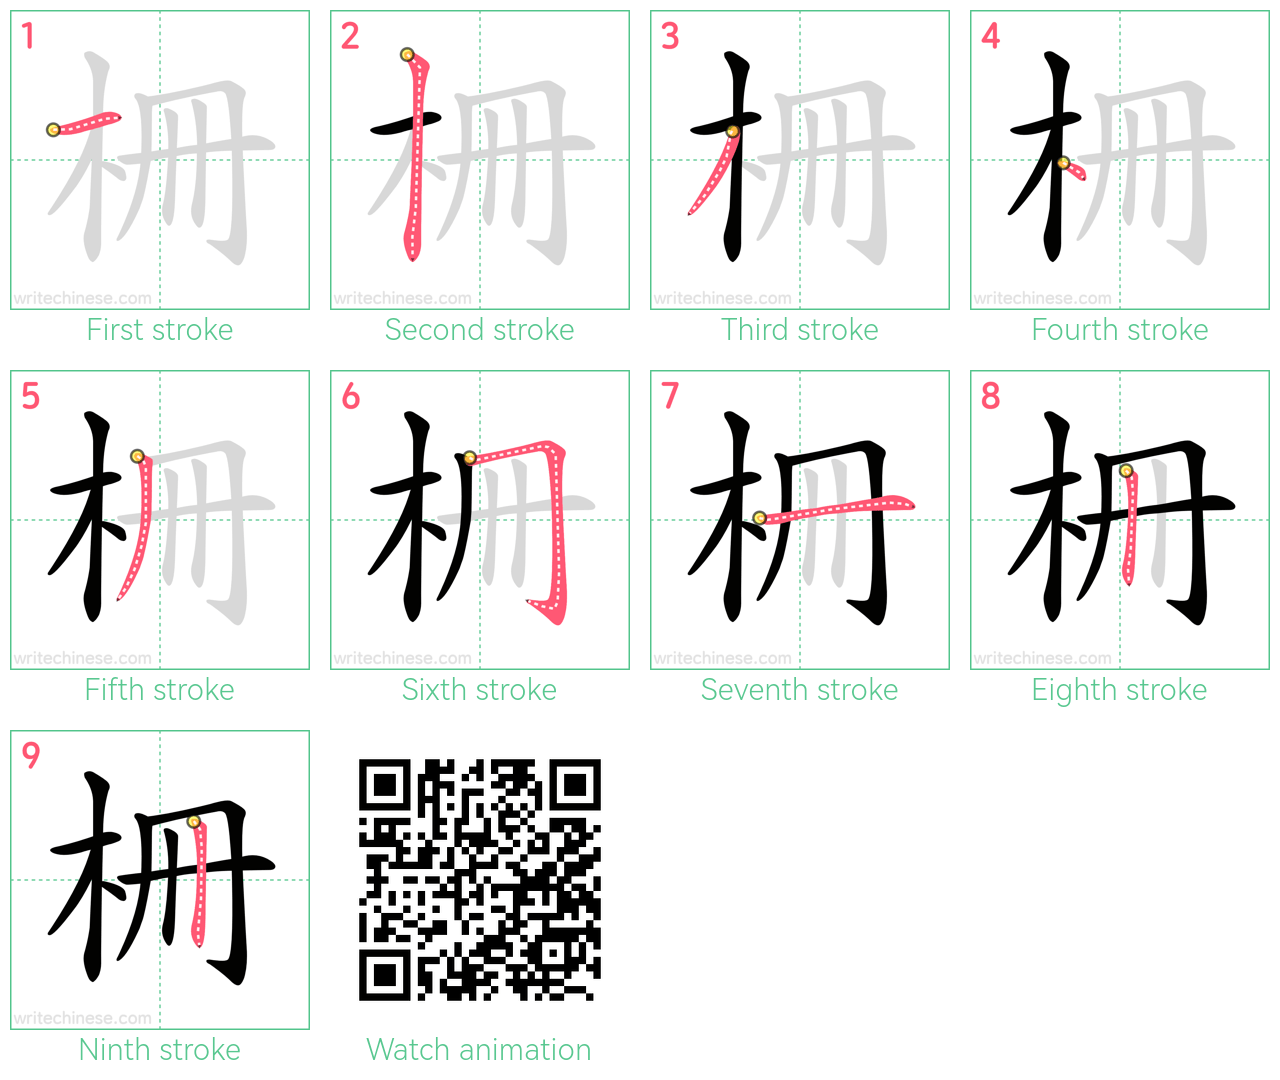 柵 step-by-step stroke order diagrams